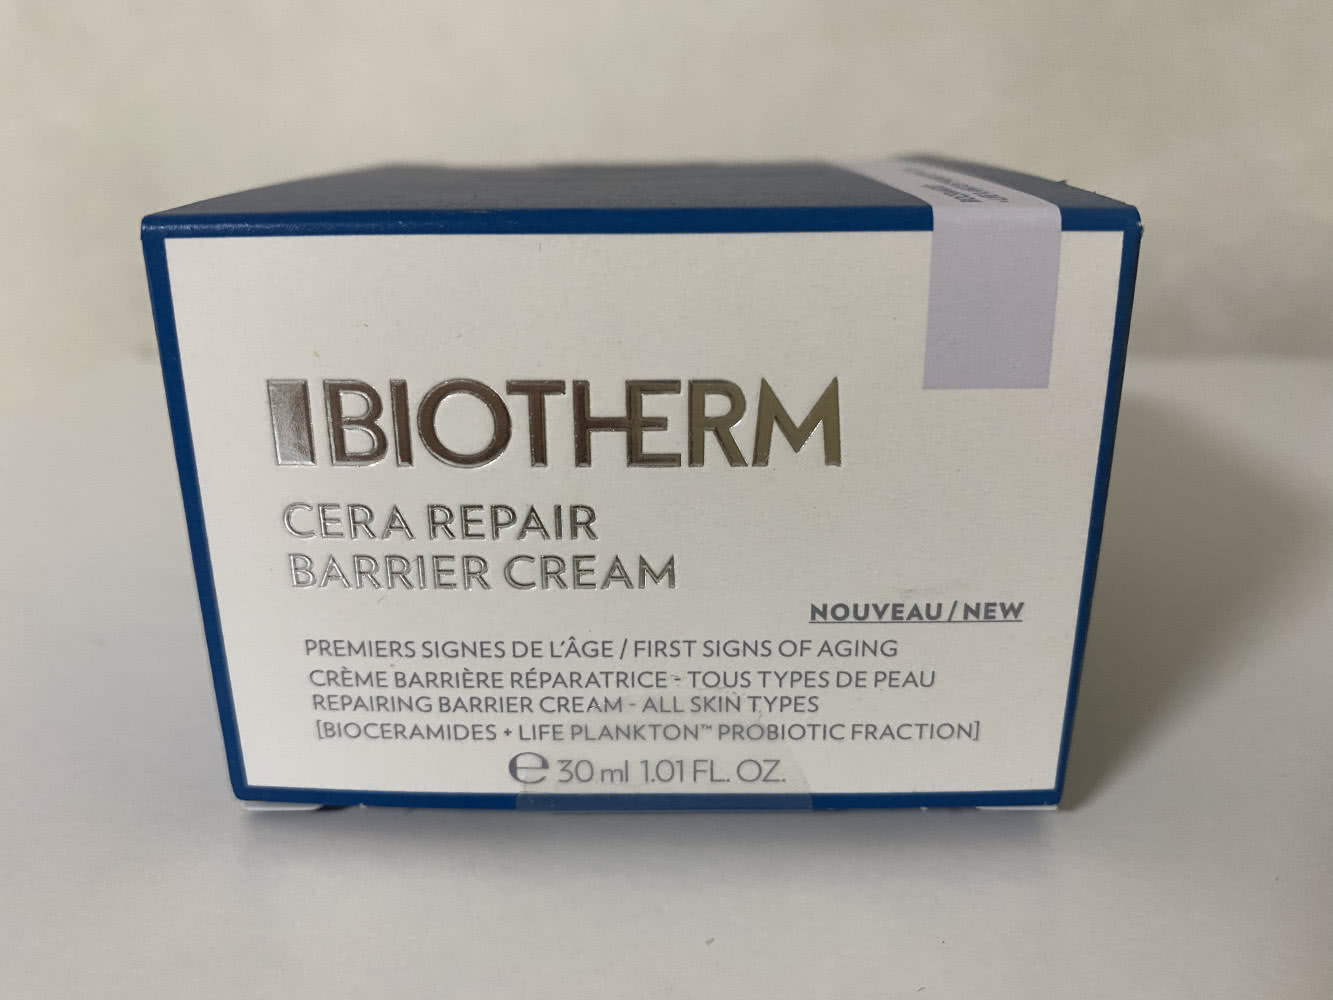 Biotherm cera repair barrier cream